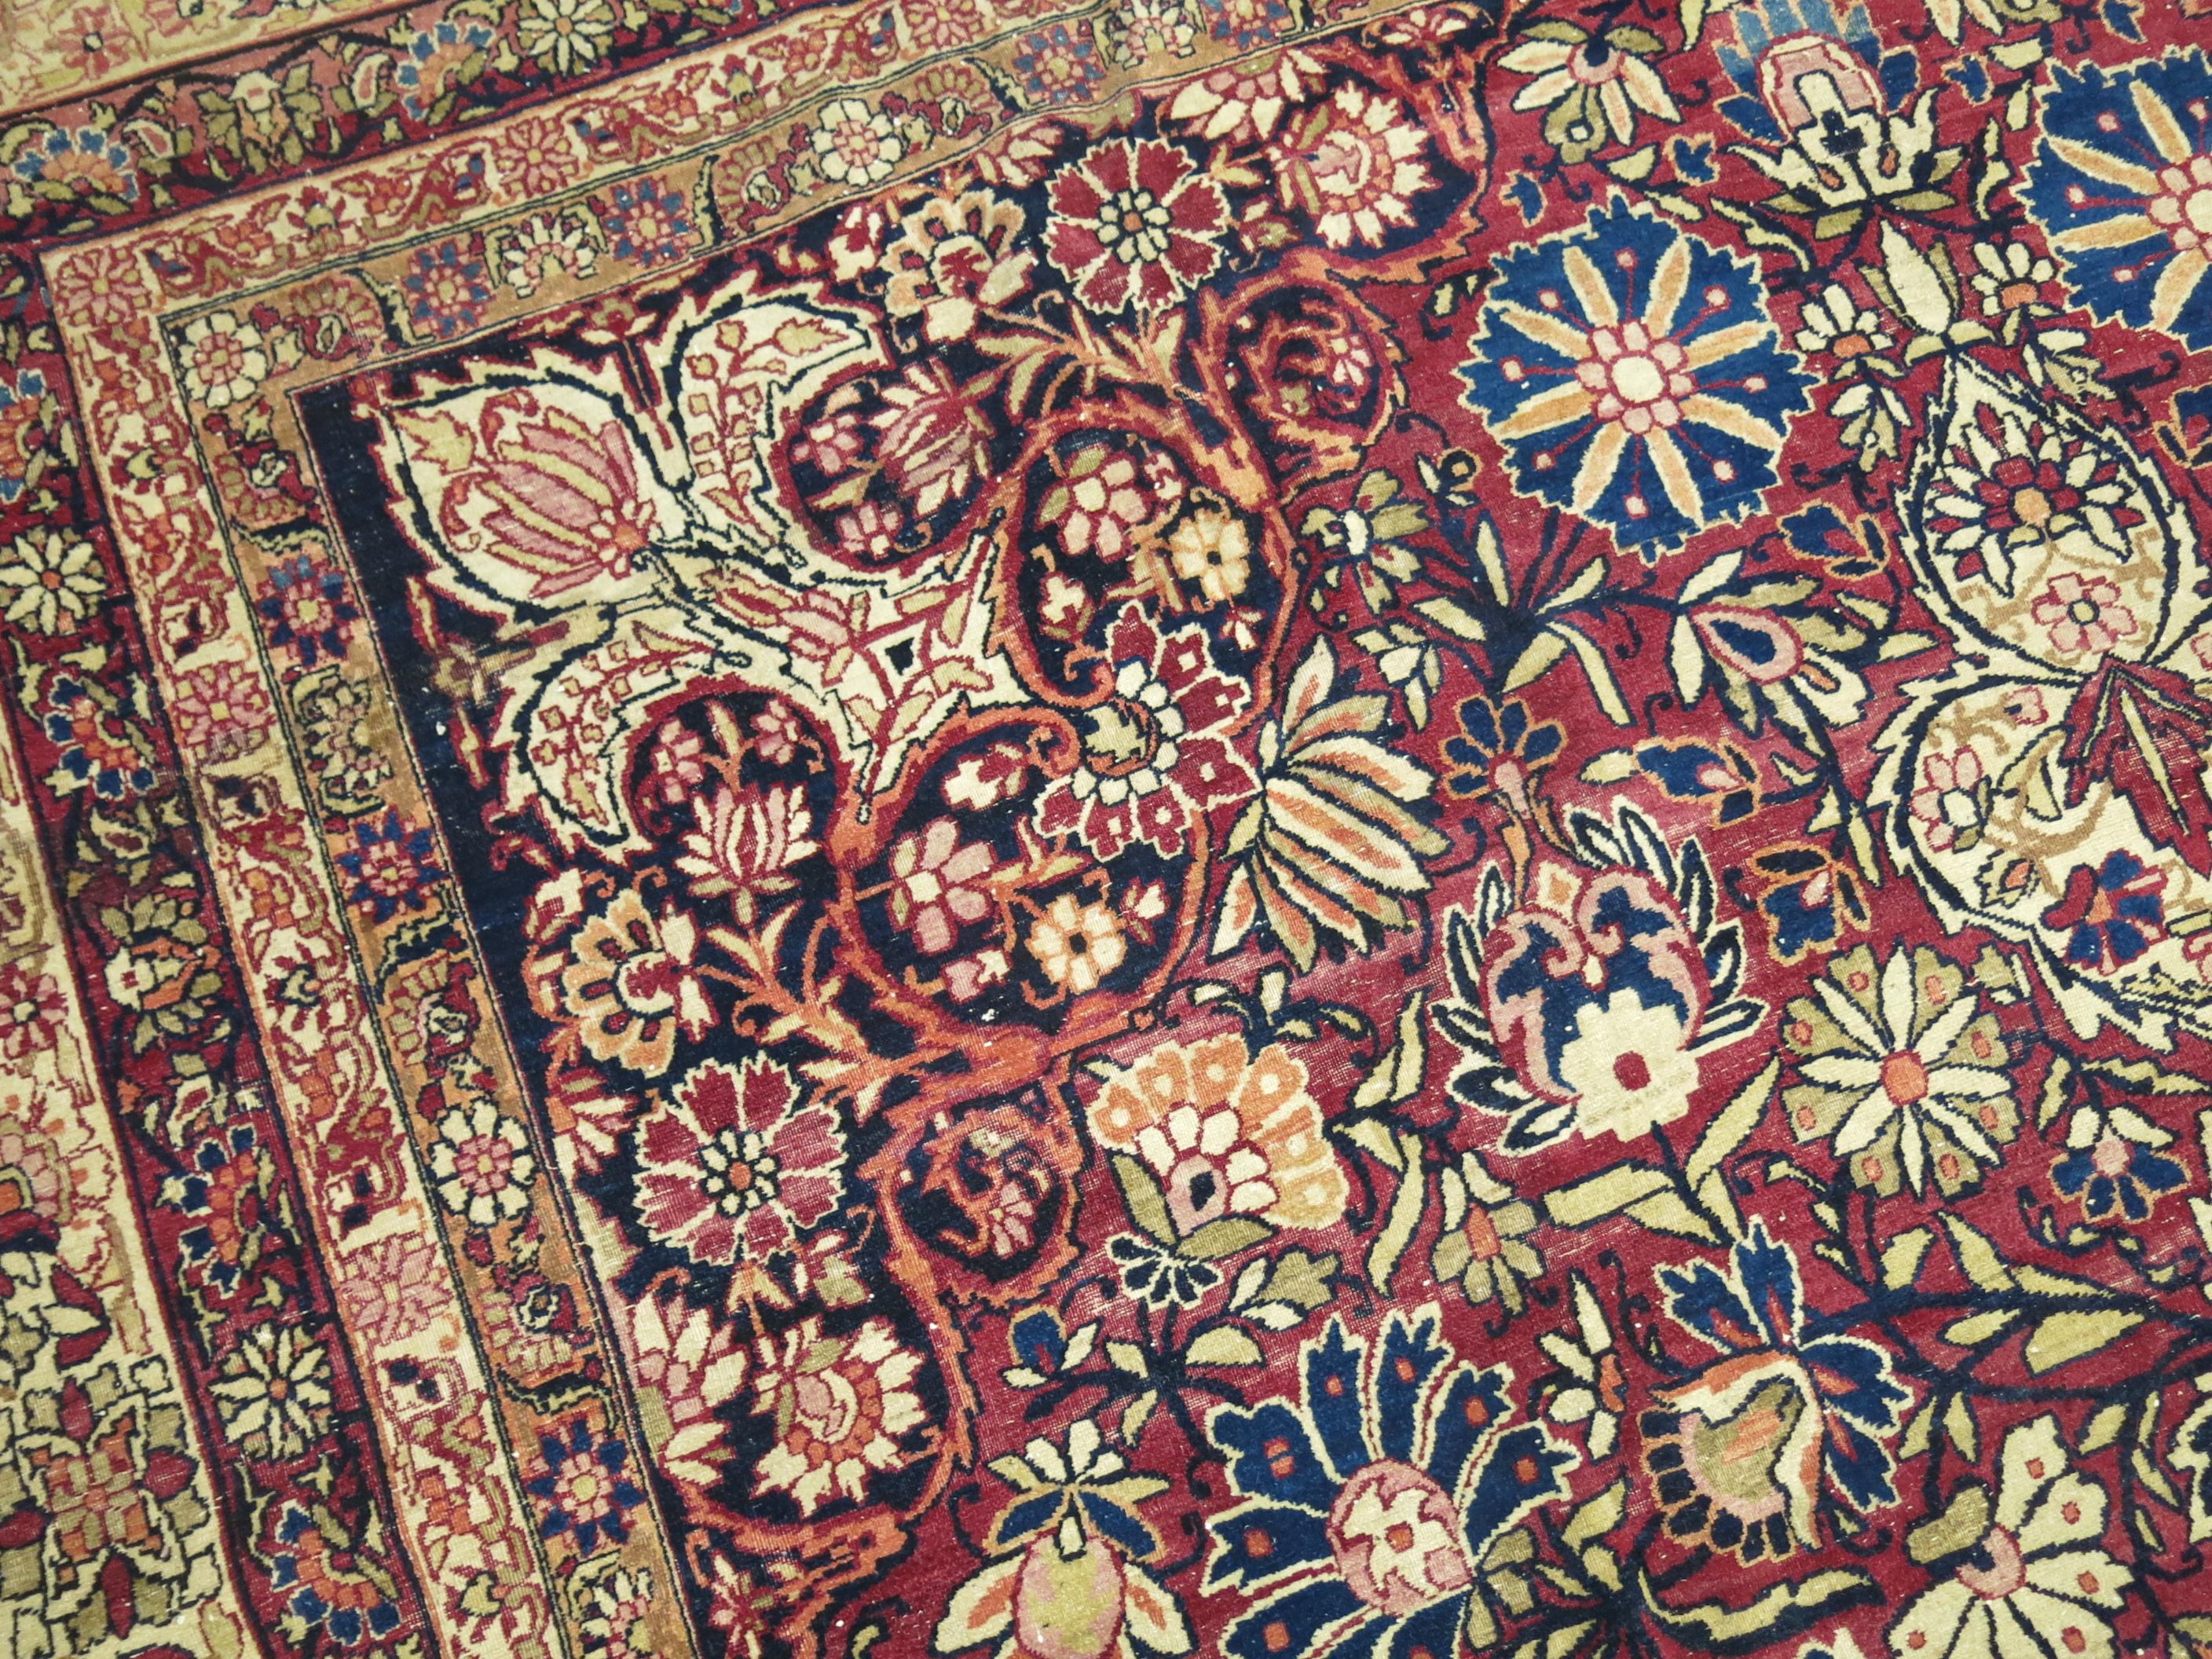 Un tapis lavar Kirmanshah authentique et unique en son genre.

La palette de couleurs des tapis Laver Kirman est exceptionnellement douce et délicate, avec une grâce européenne. Les tisserands avaient accès à la teinture de cochenille, très prisée